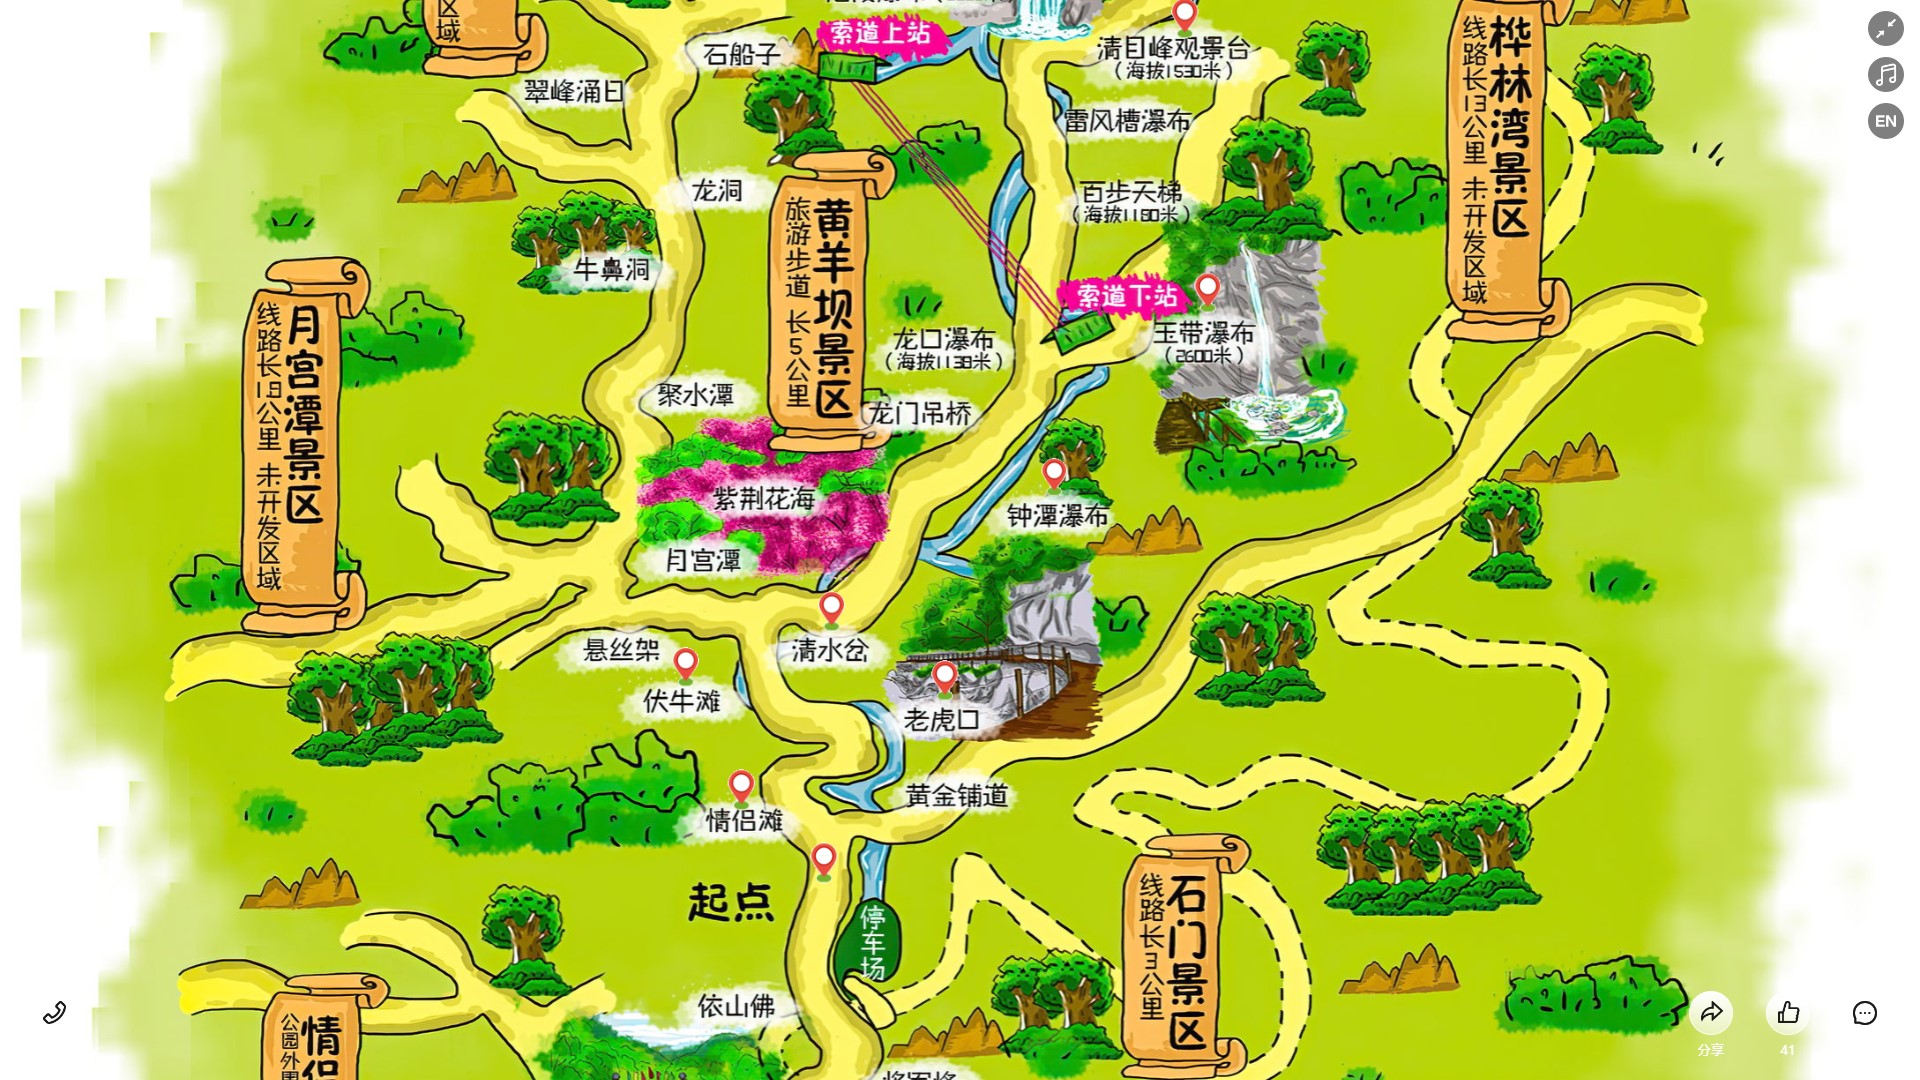 沔城回族镇景区导览系统